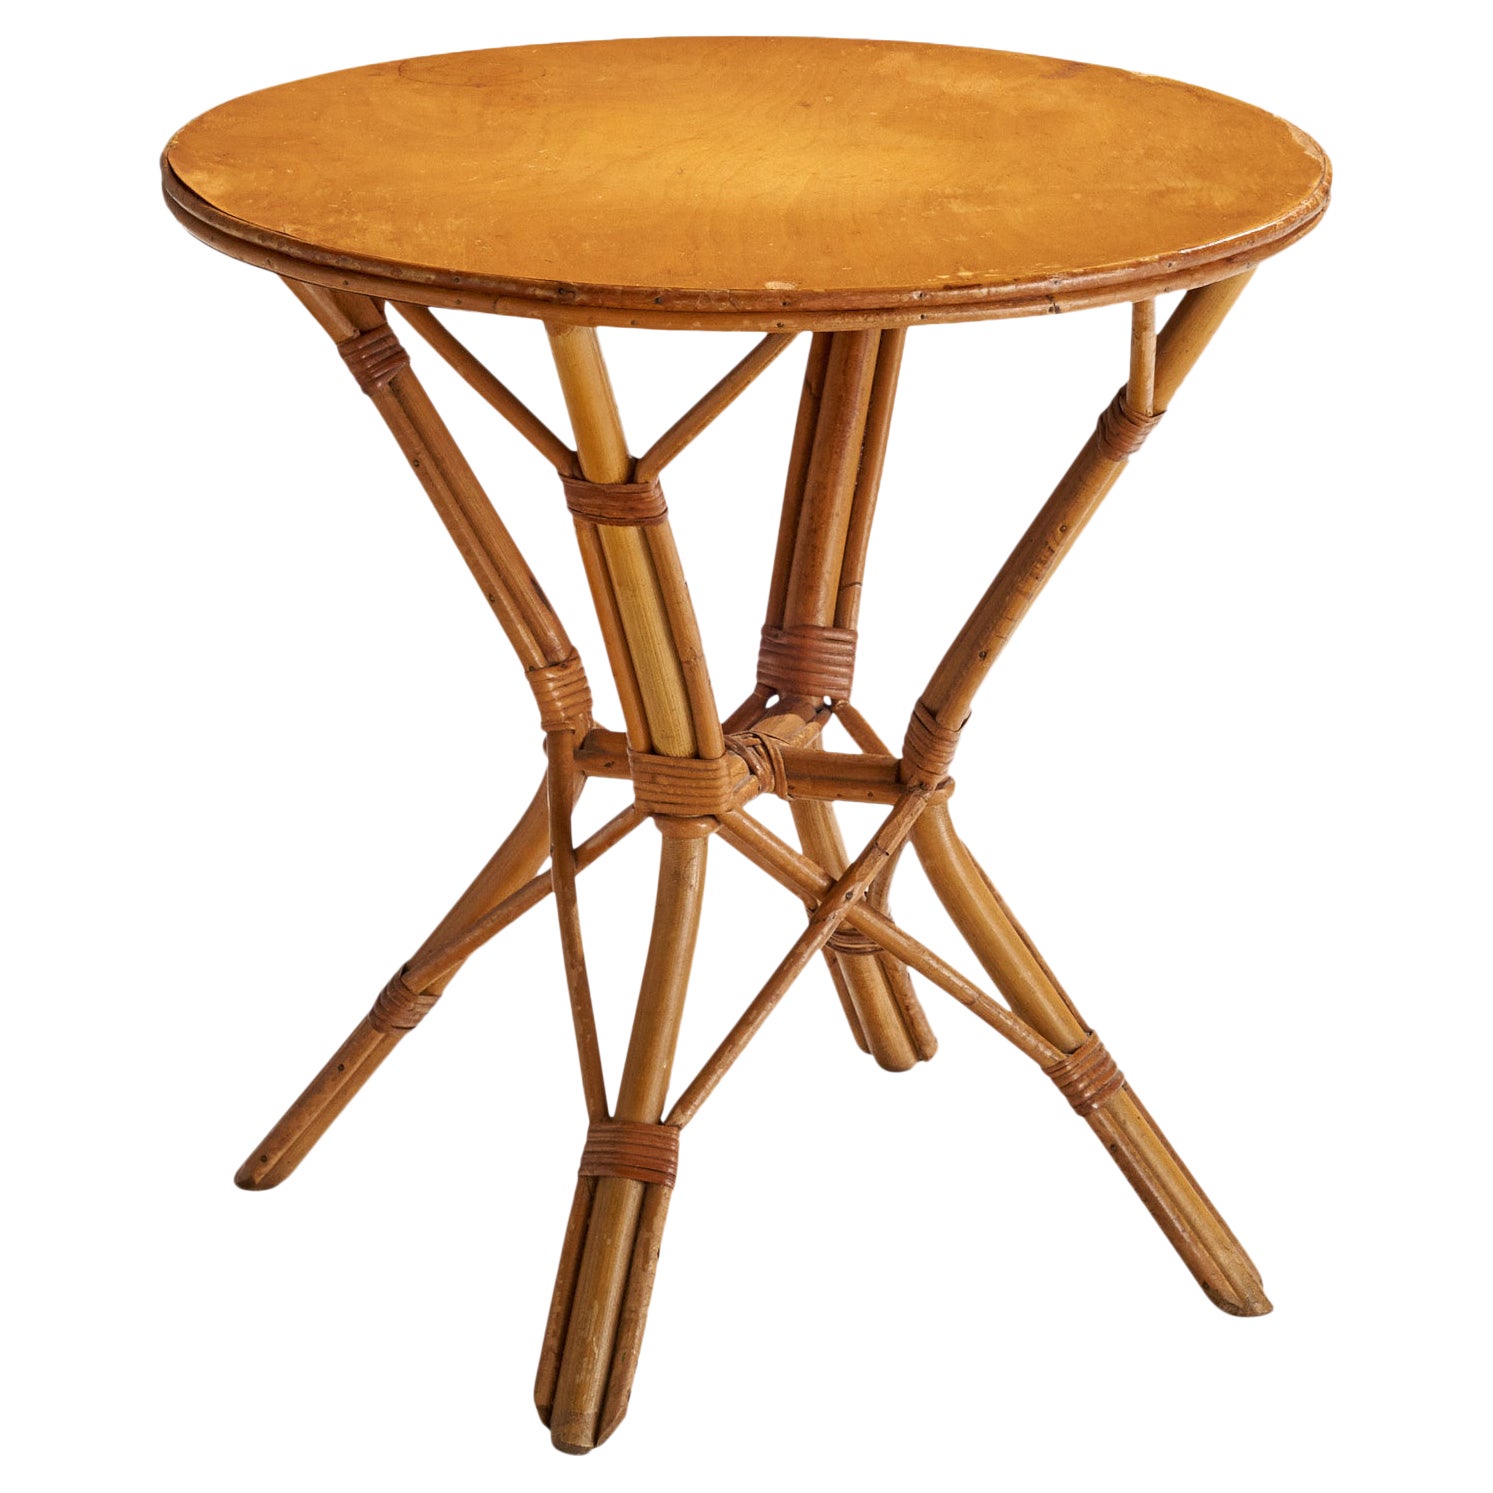 Designer américain, table d'appoint, bambou, rotin, Wood, États-Unis, années 1950